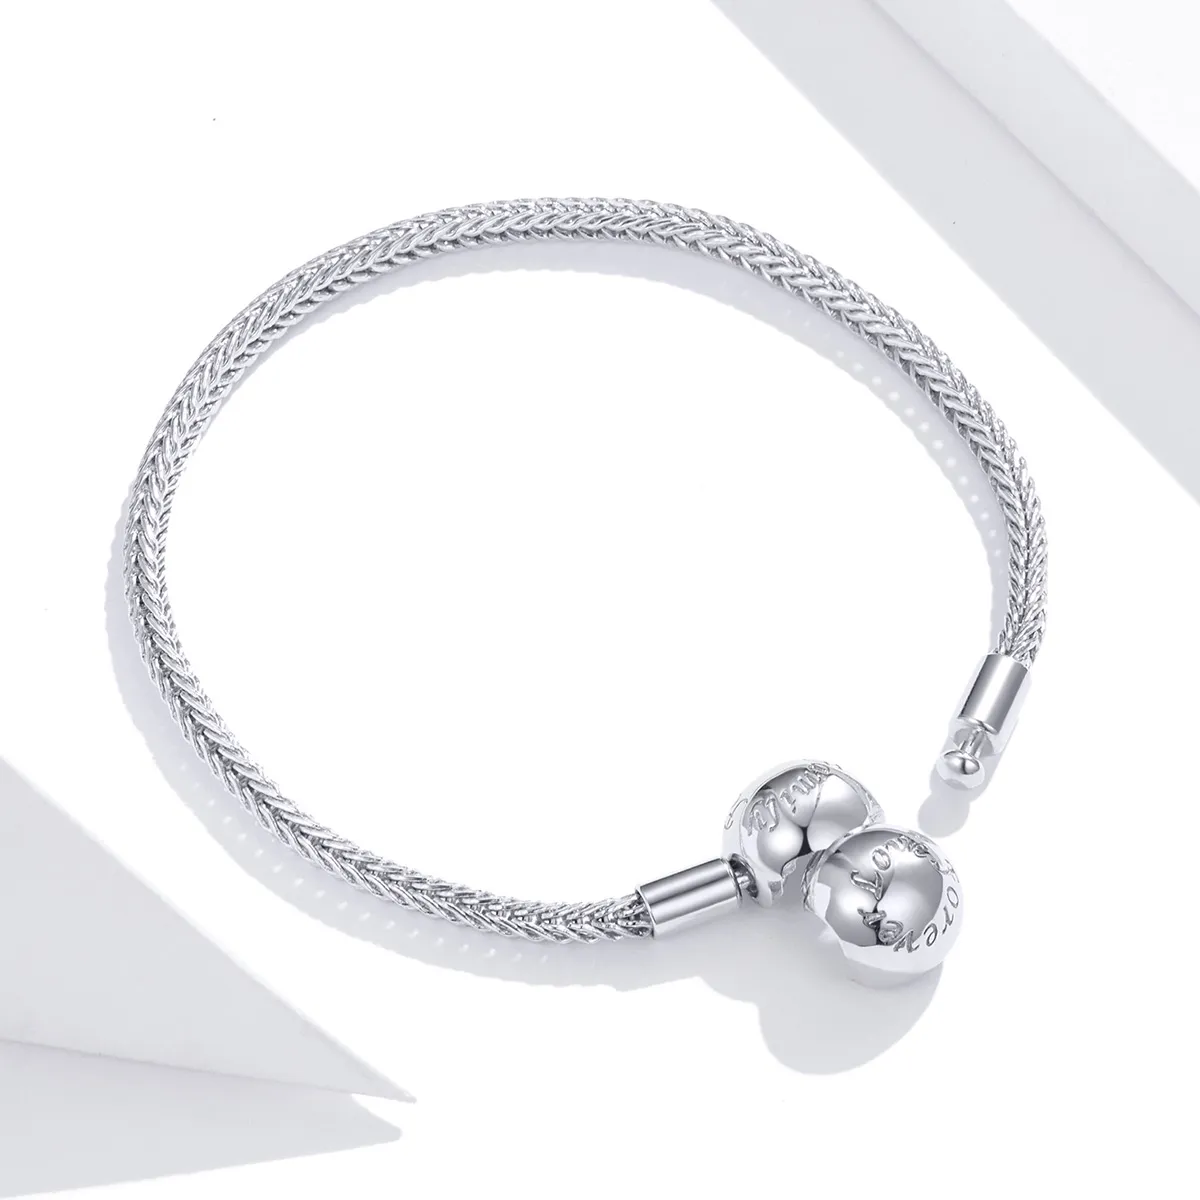 Brățară Tip Pandora cu dragoste pentru totdeauna din argint - SCB201